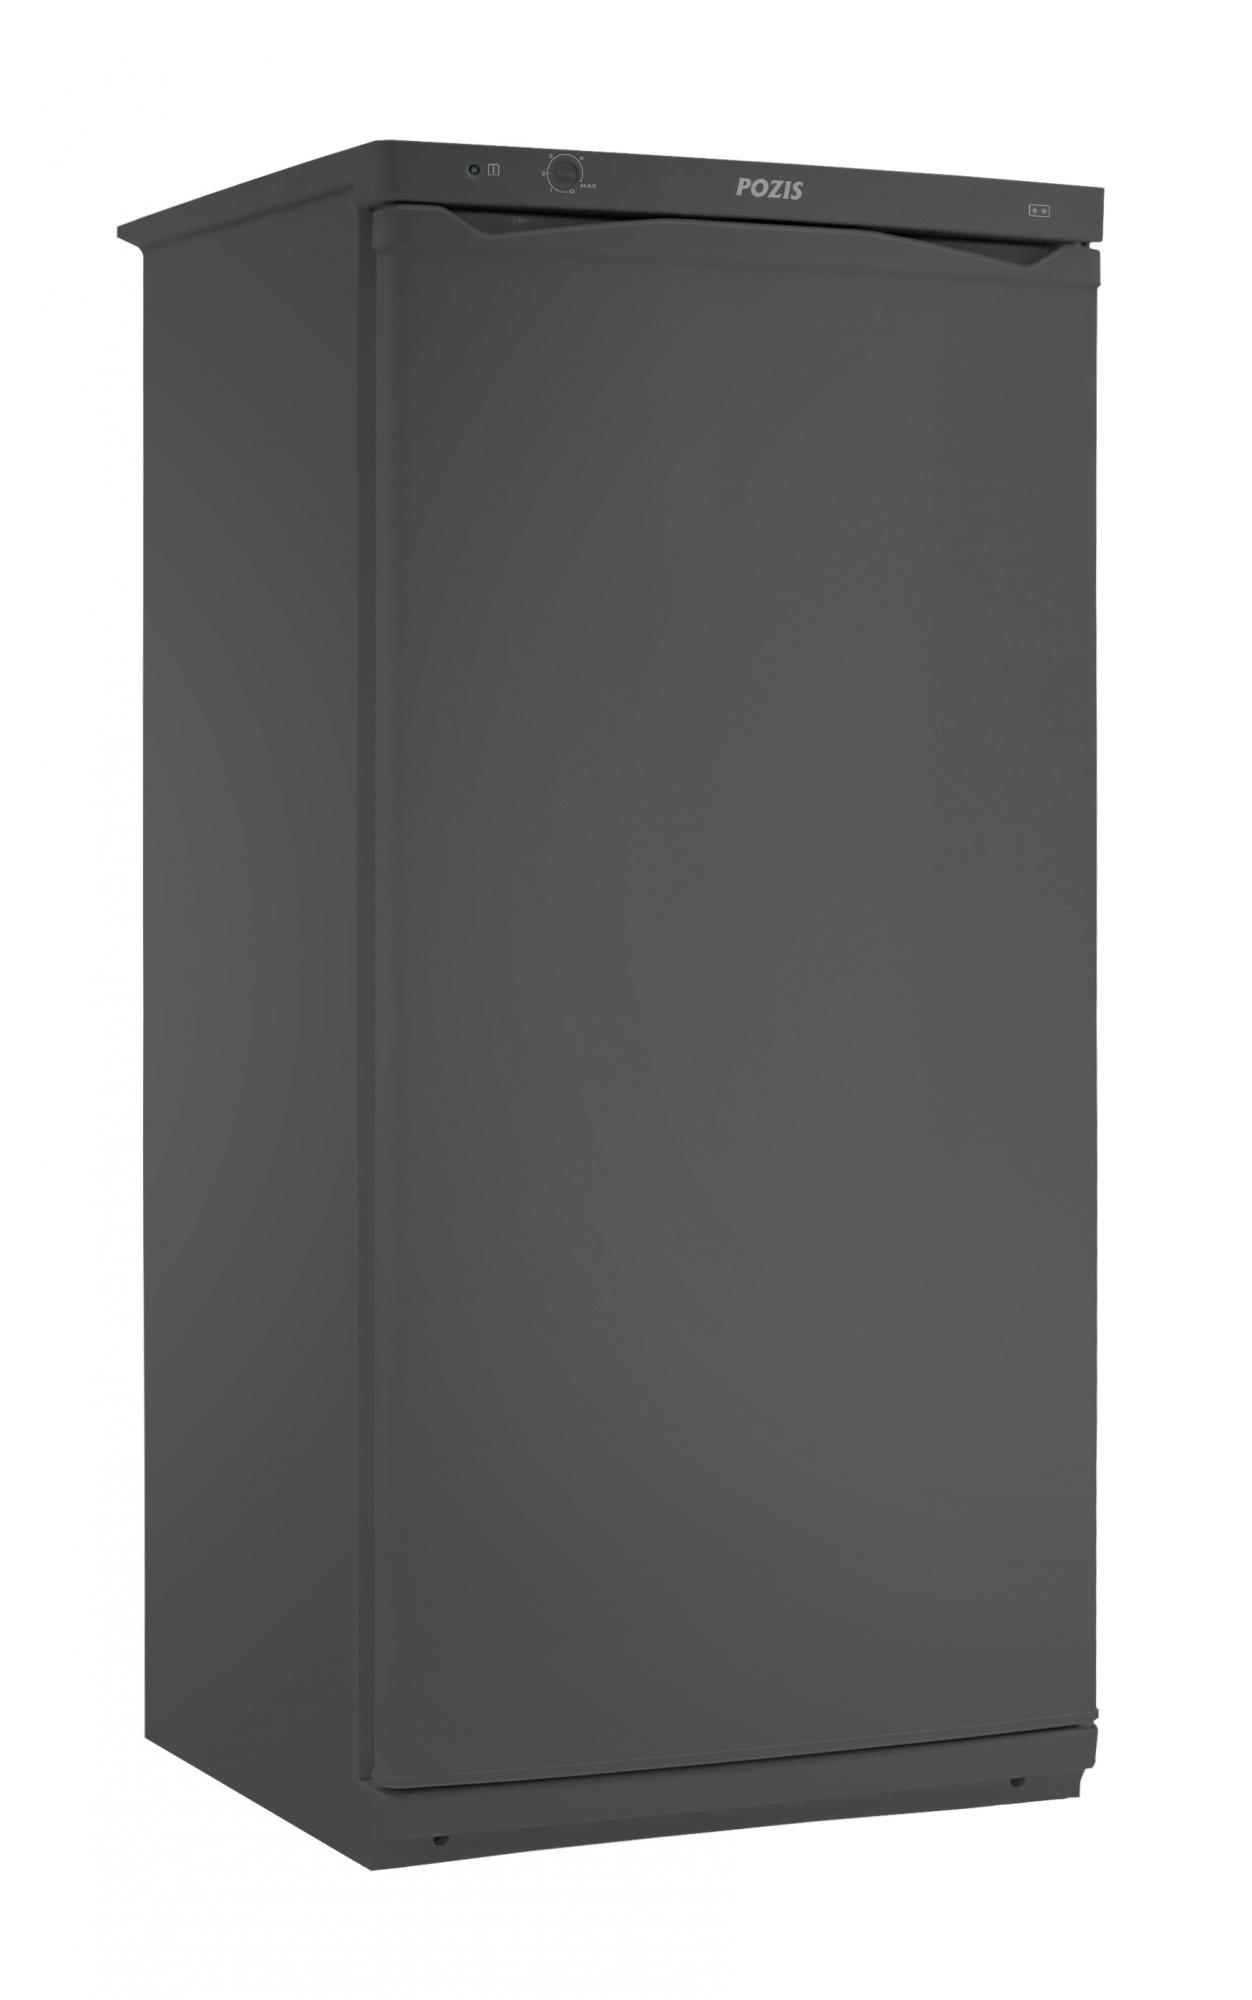 Холодильник бытовой POZIS-Свияга-404-1